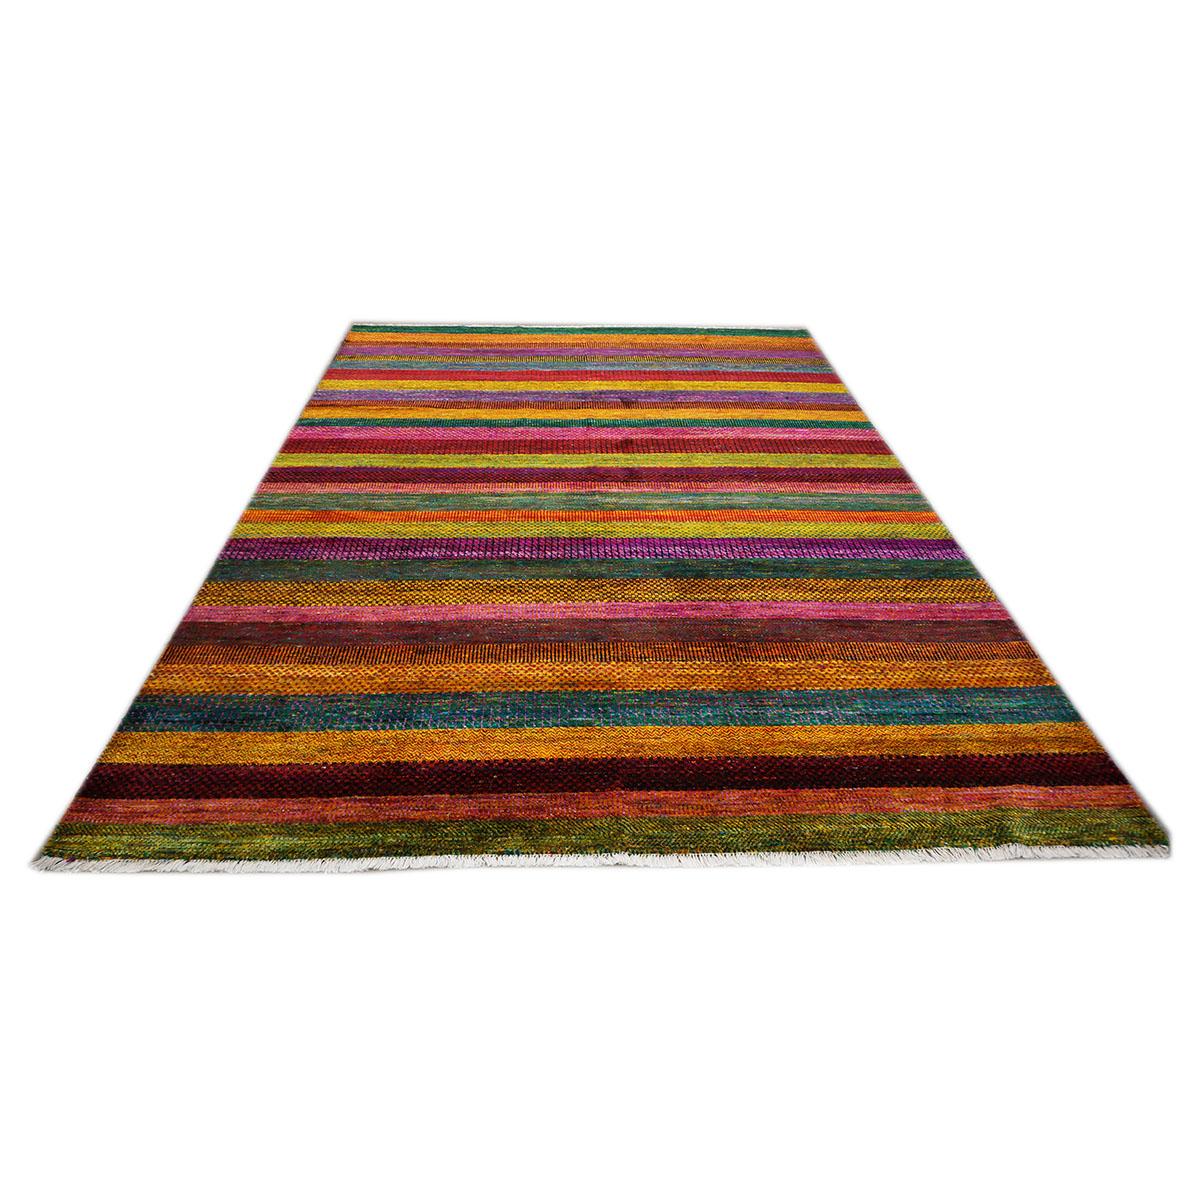  Ashly Fine Rugs présente un tapis Ikat en soie indienne 9x12. Les robes en soie Sari sont collectées, démêlées et les fils sont filés pour obtenir des fils adaptés au tissage de tapis noués à la main. Les variables sont aléatoires quant à